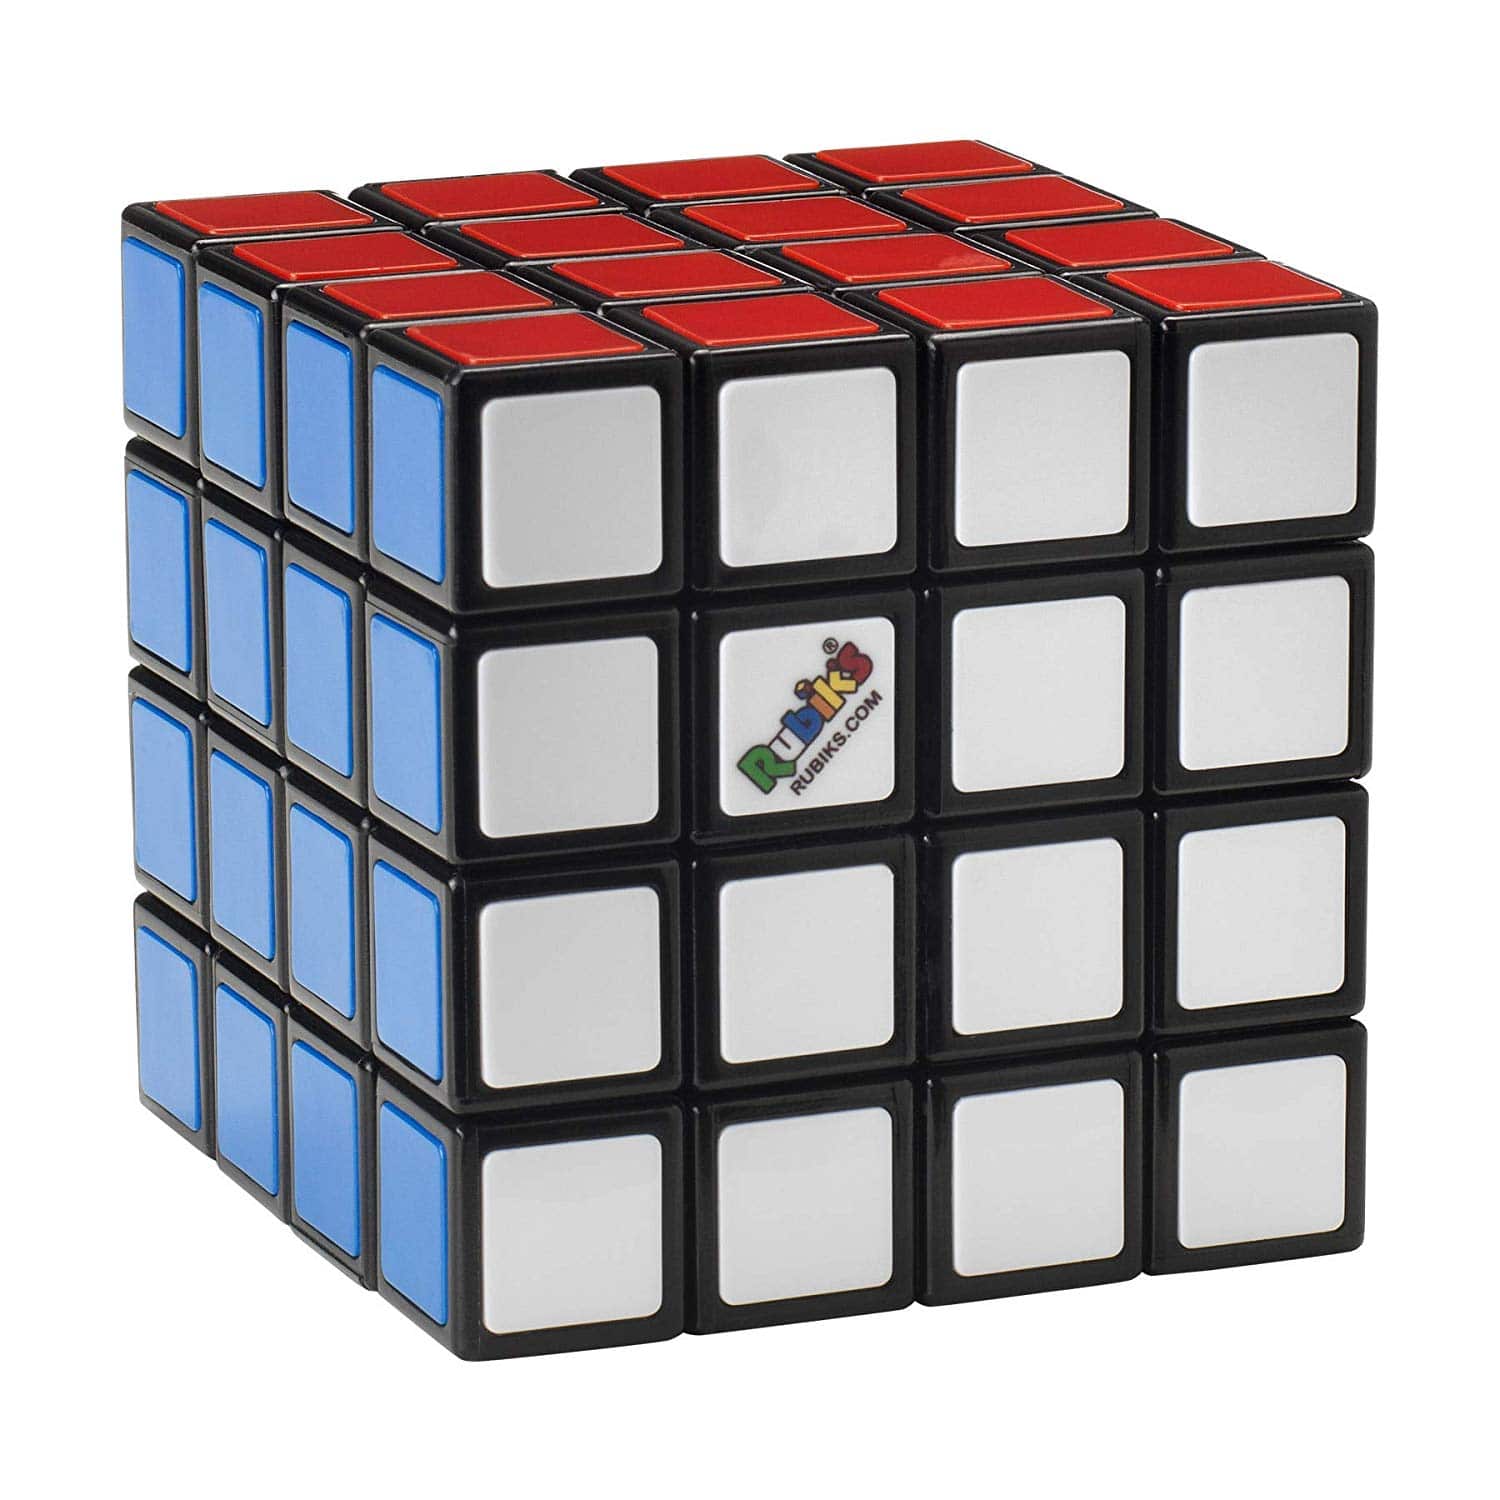 Cubo di rubik 3X3 - Acquista Subito